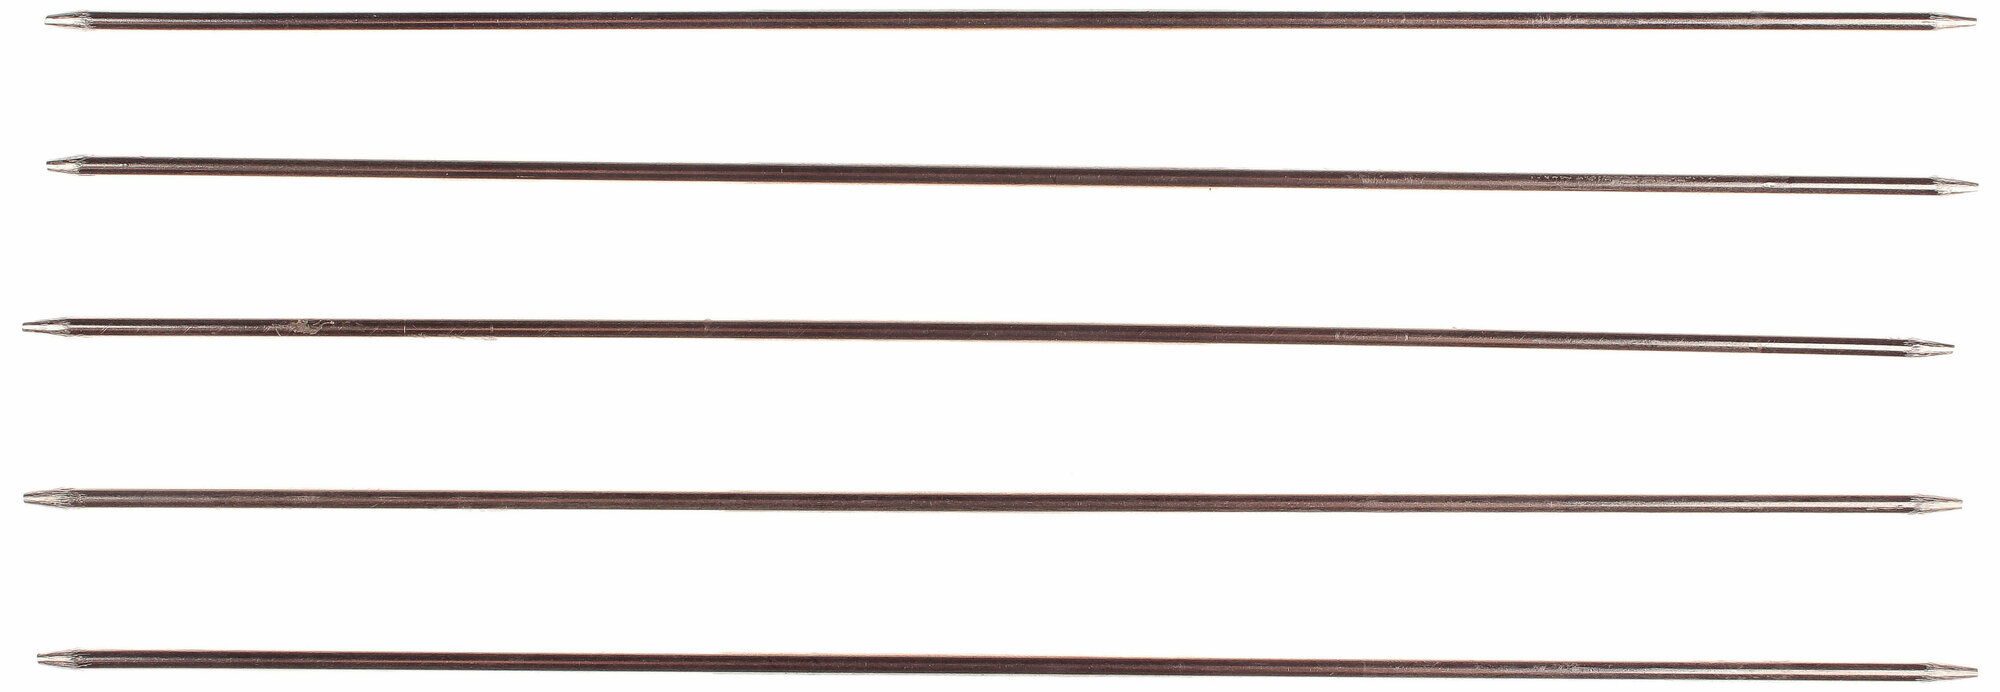 Спицы для вязания 5-ти комплектные ВОС металлические, d2,5мм, 19см, 1шт